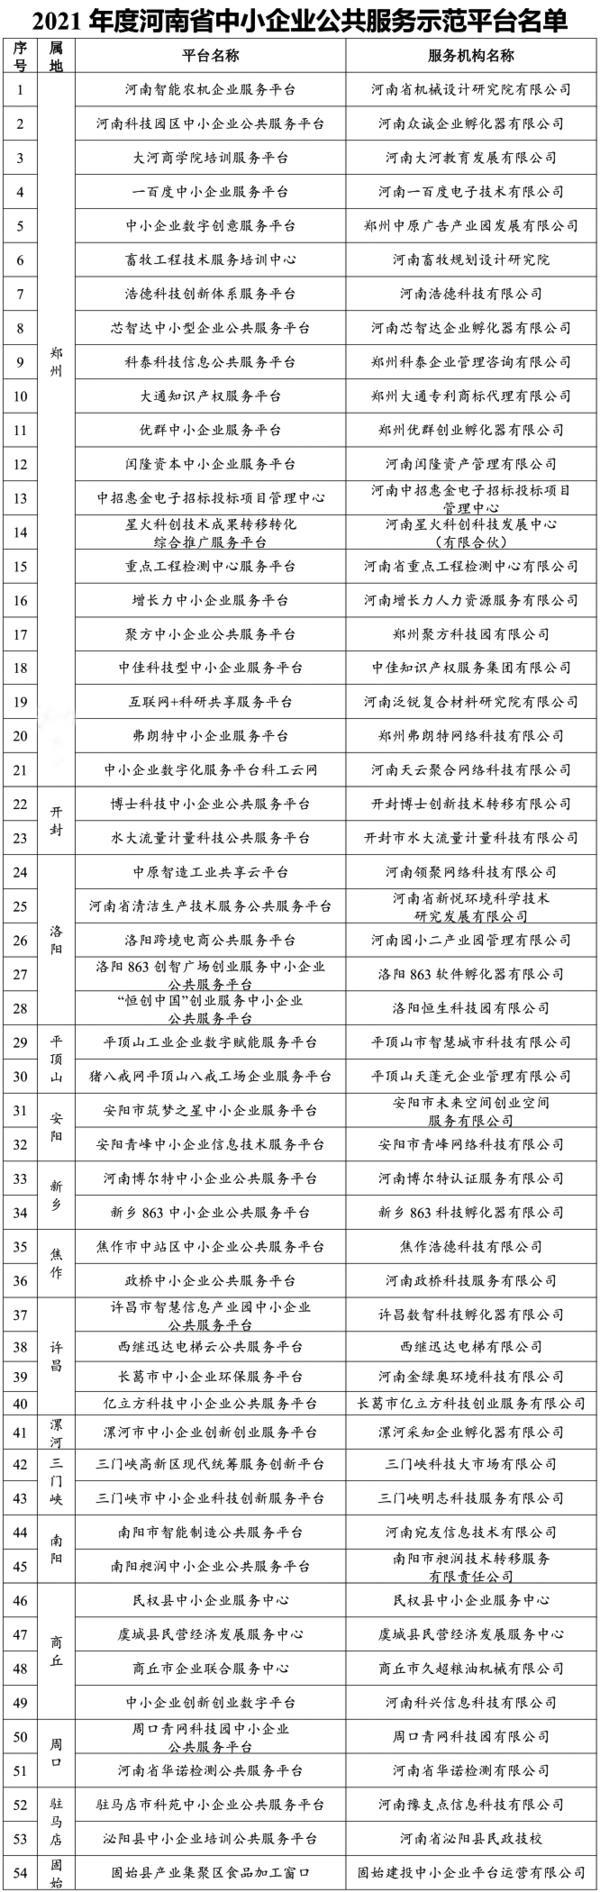 2021年度河南省中小企业公共服务示范平台名单公布